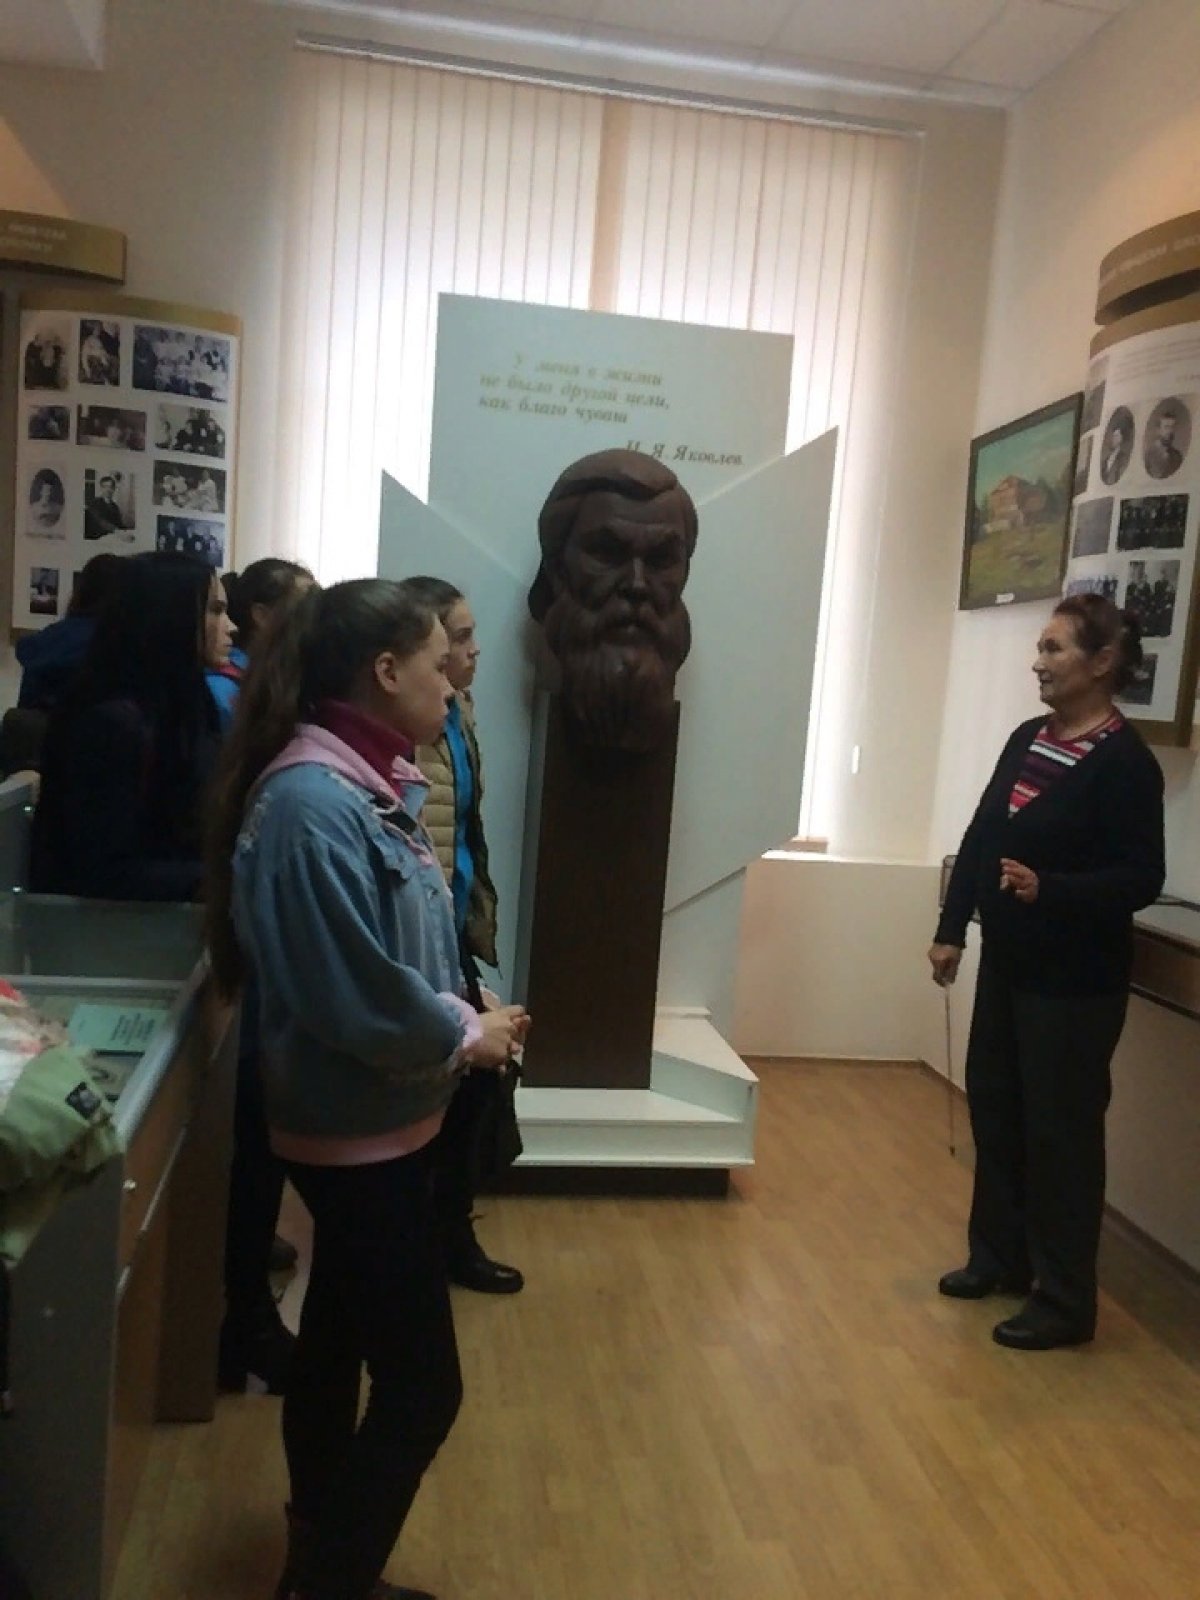 Друзья! Каждый студент ЧГПУ должен побывать в уникальном музее Ивана Яковлевича Яковлева. Ведь именно его имя носит наш ВУЗ!